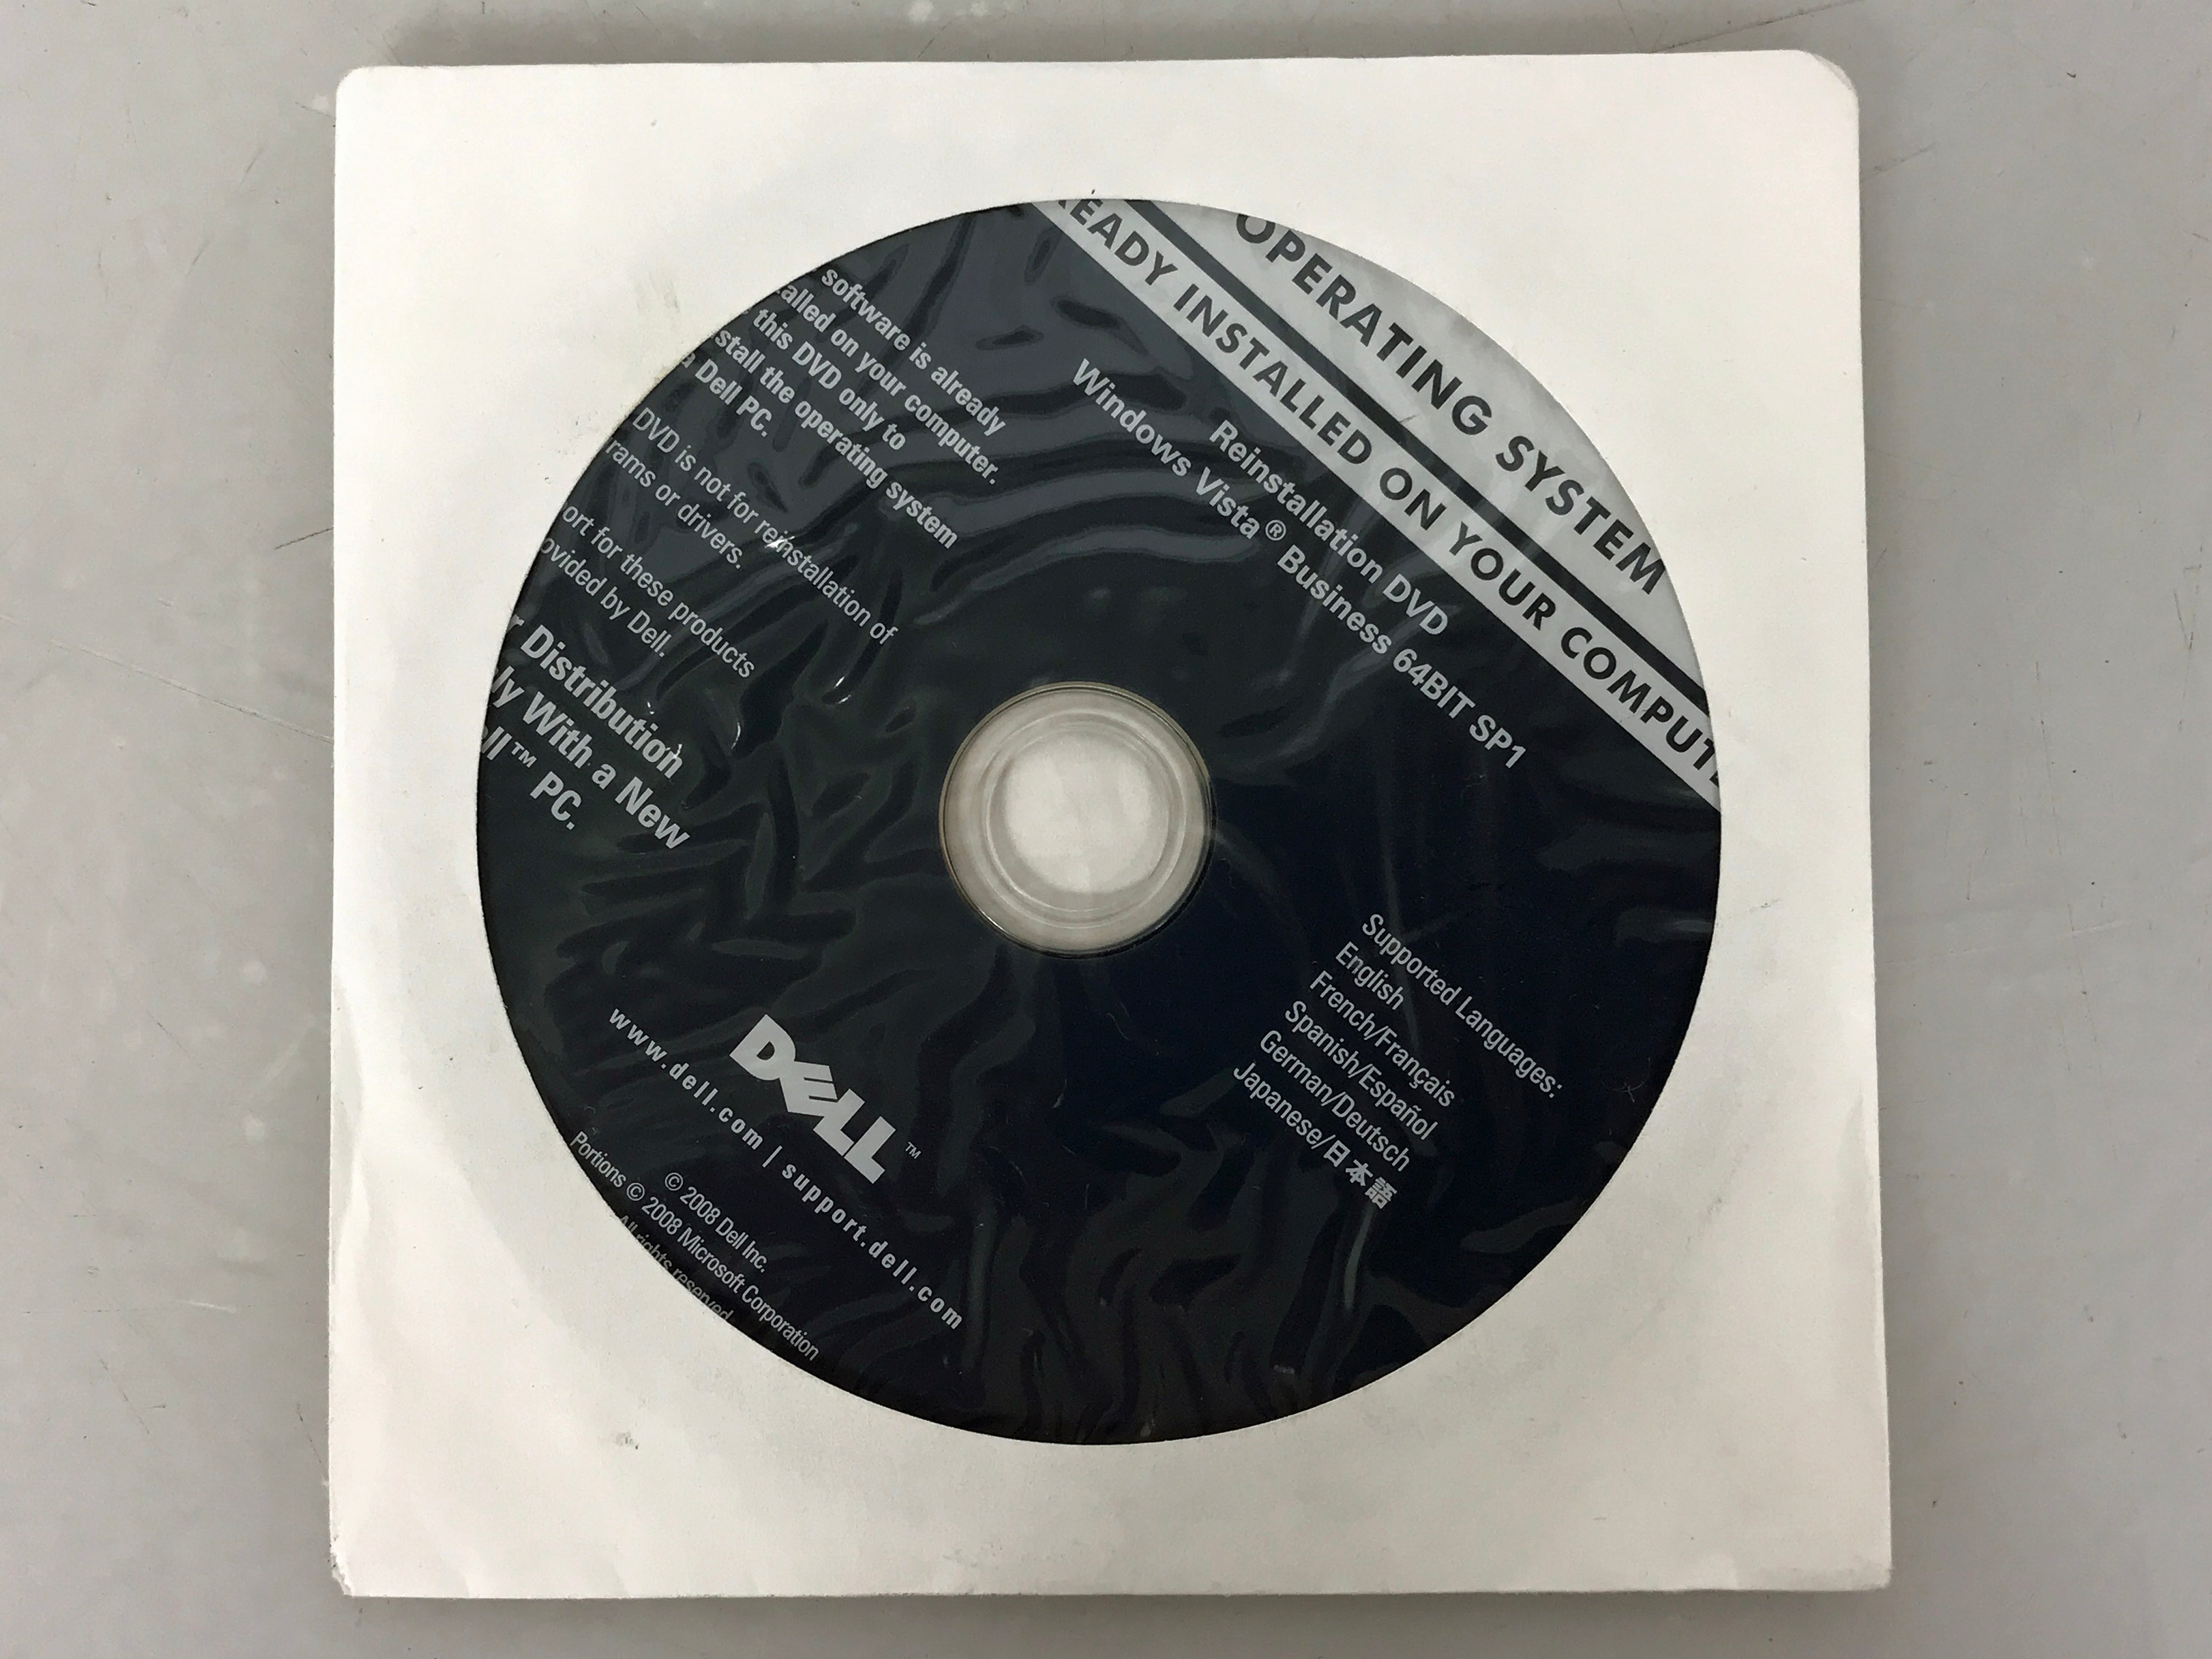 Windows Vista Business 64-Bit SP1 Re-Installation DVD